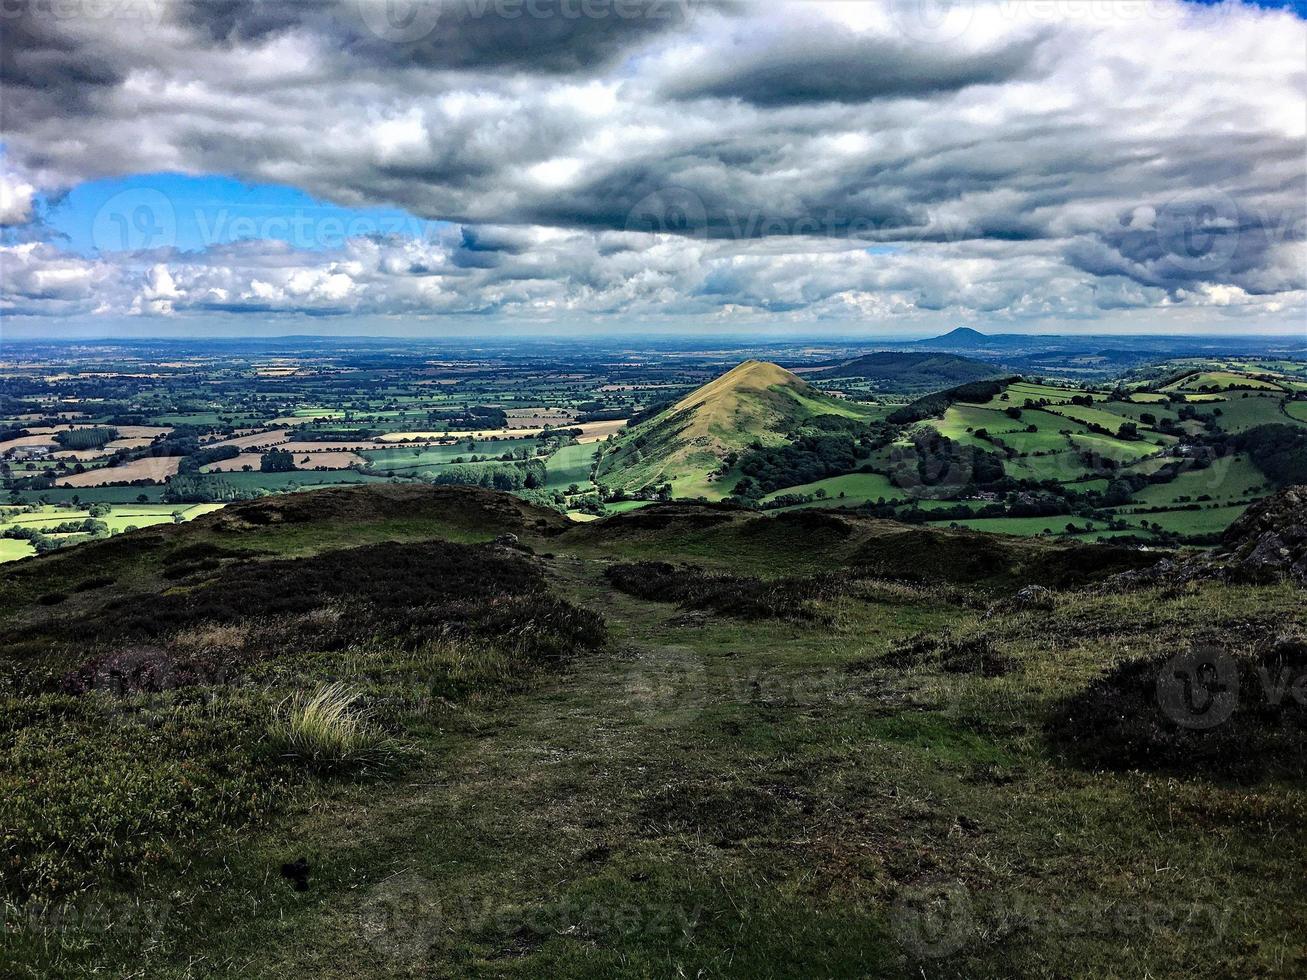 uma vista das colinas de caradoc em shropshire foto